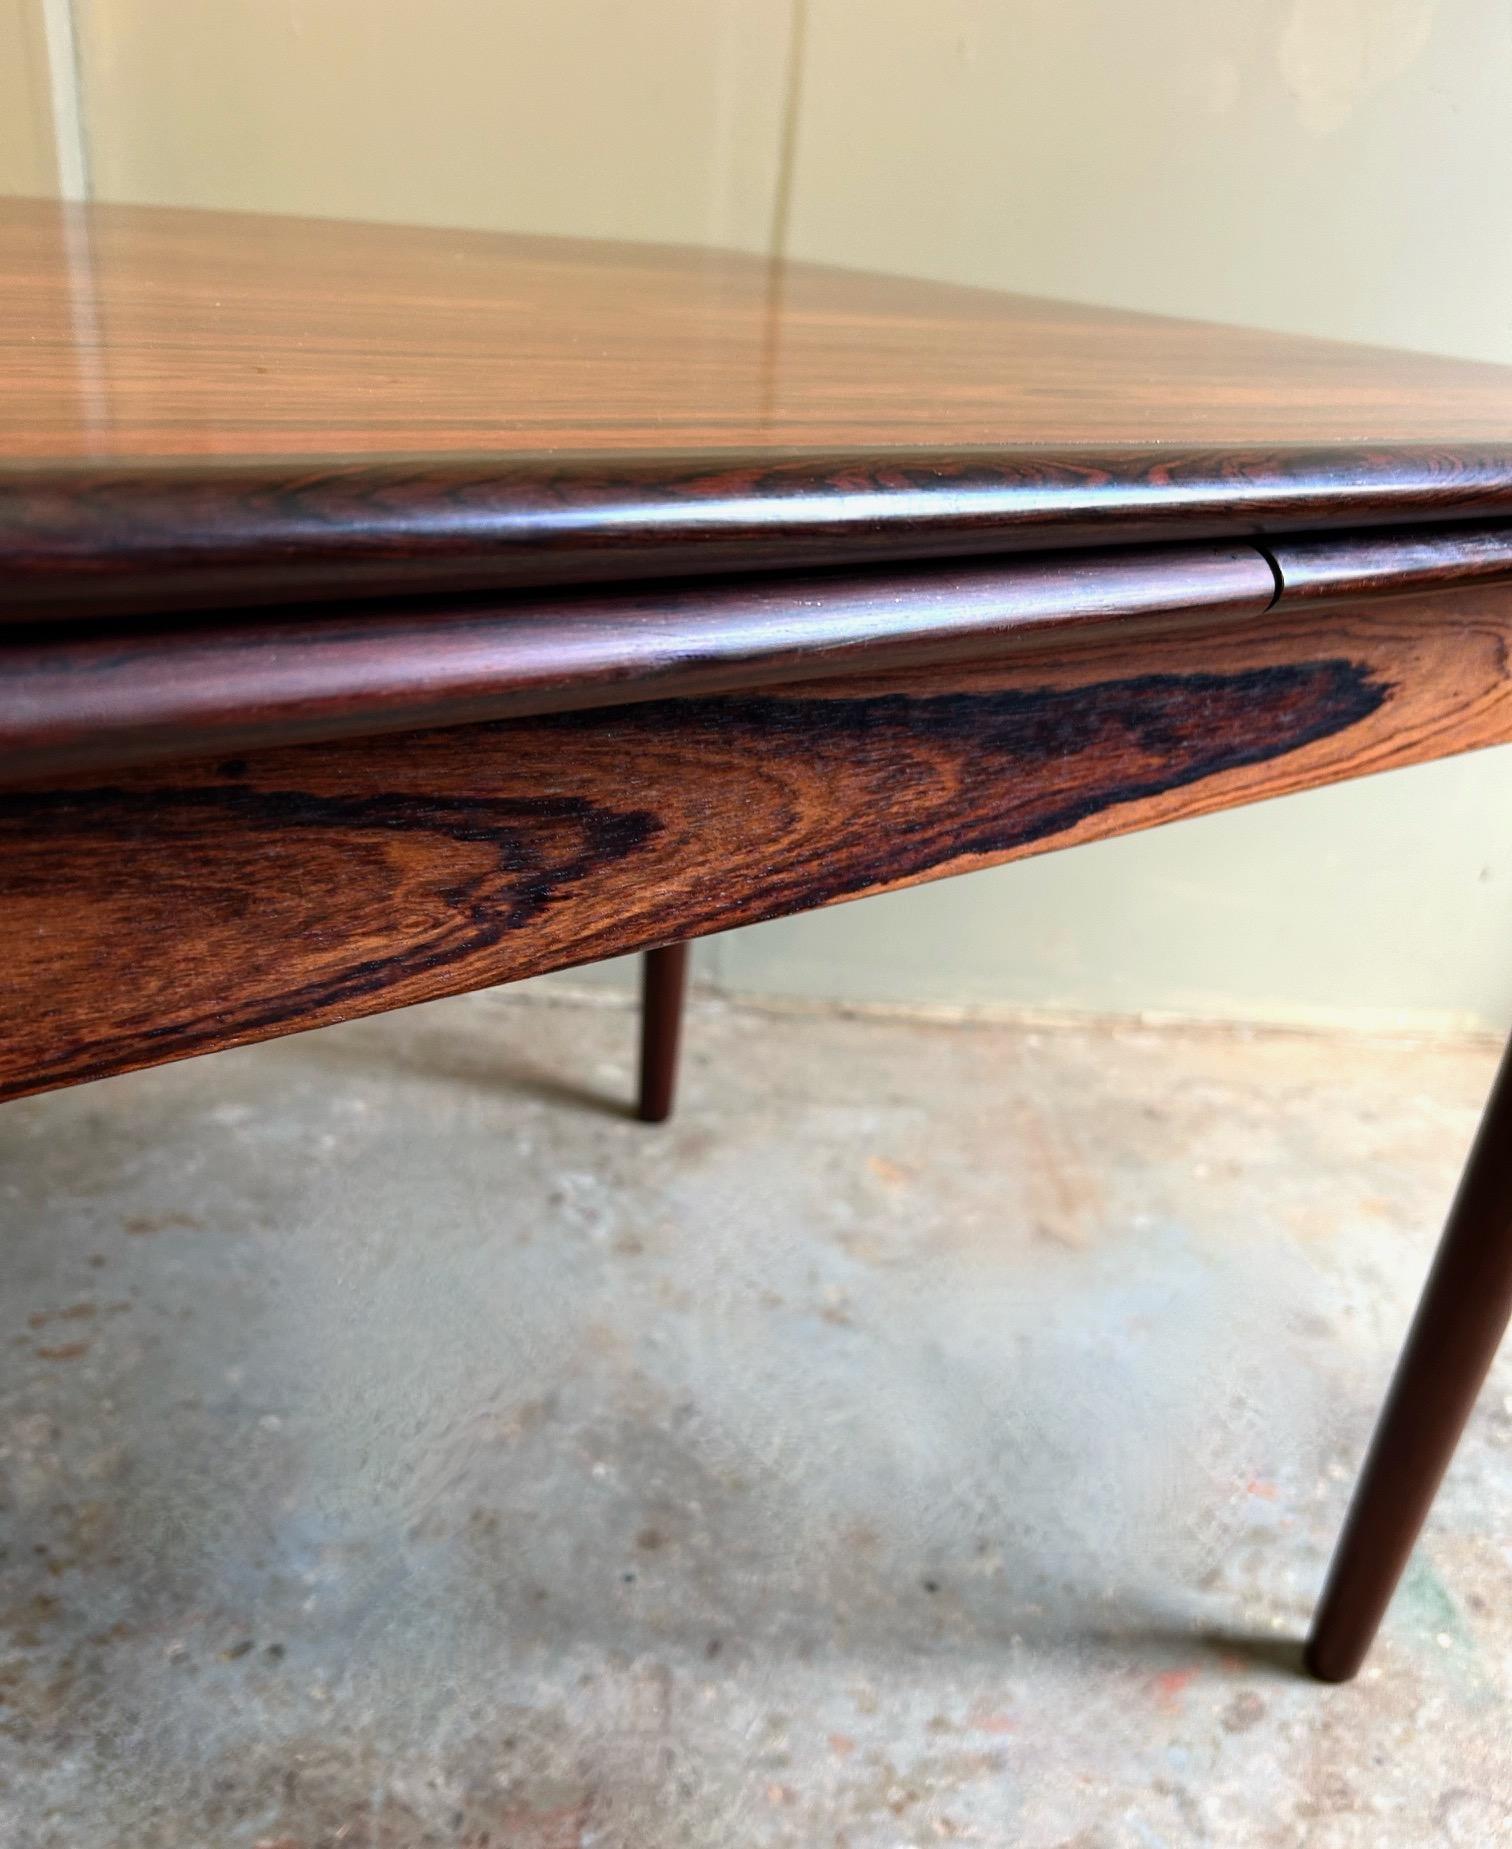 Dieser schöne dänische Esstisch aus Palisanderholz ist eine stilvolle Ergänzung für jeden Ess- oder Arbeitsbereich. Ein auffälliges Möbelstück im klassischen skandinavischen Design.

Der Tisch hat zwei ausziehbare Verlängerungsplatten, die unter die